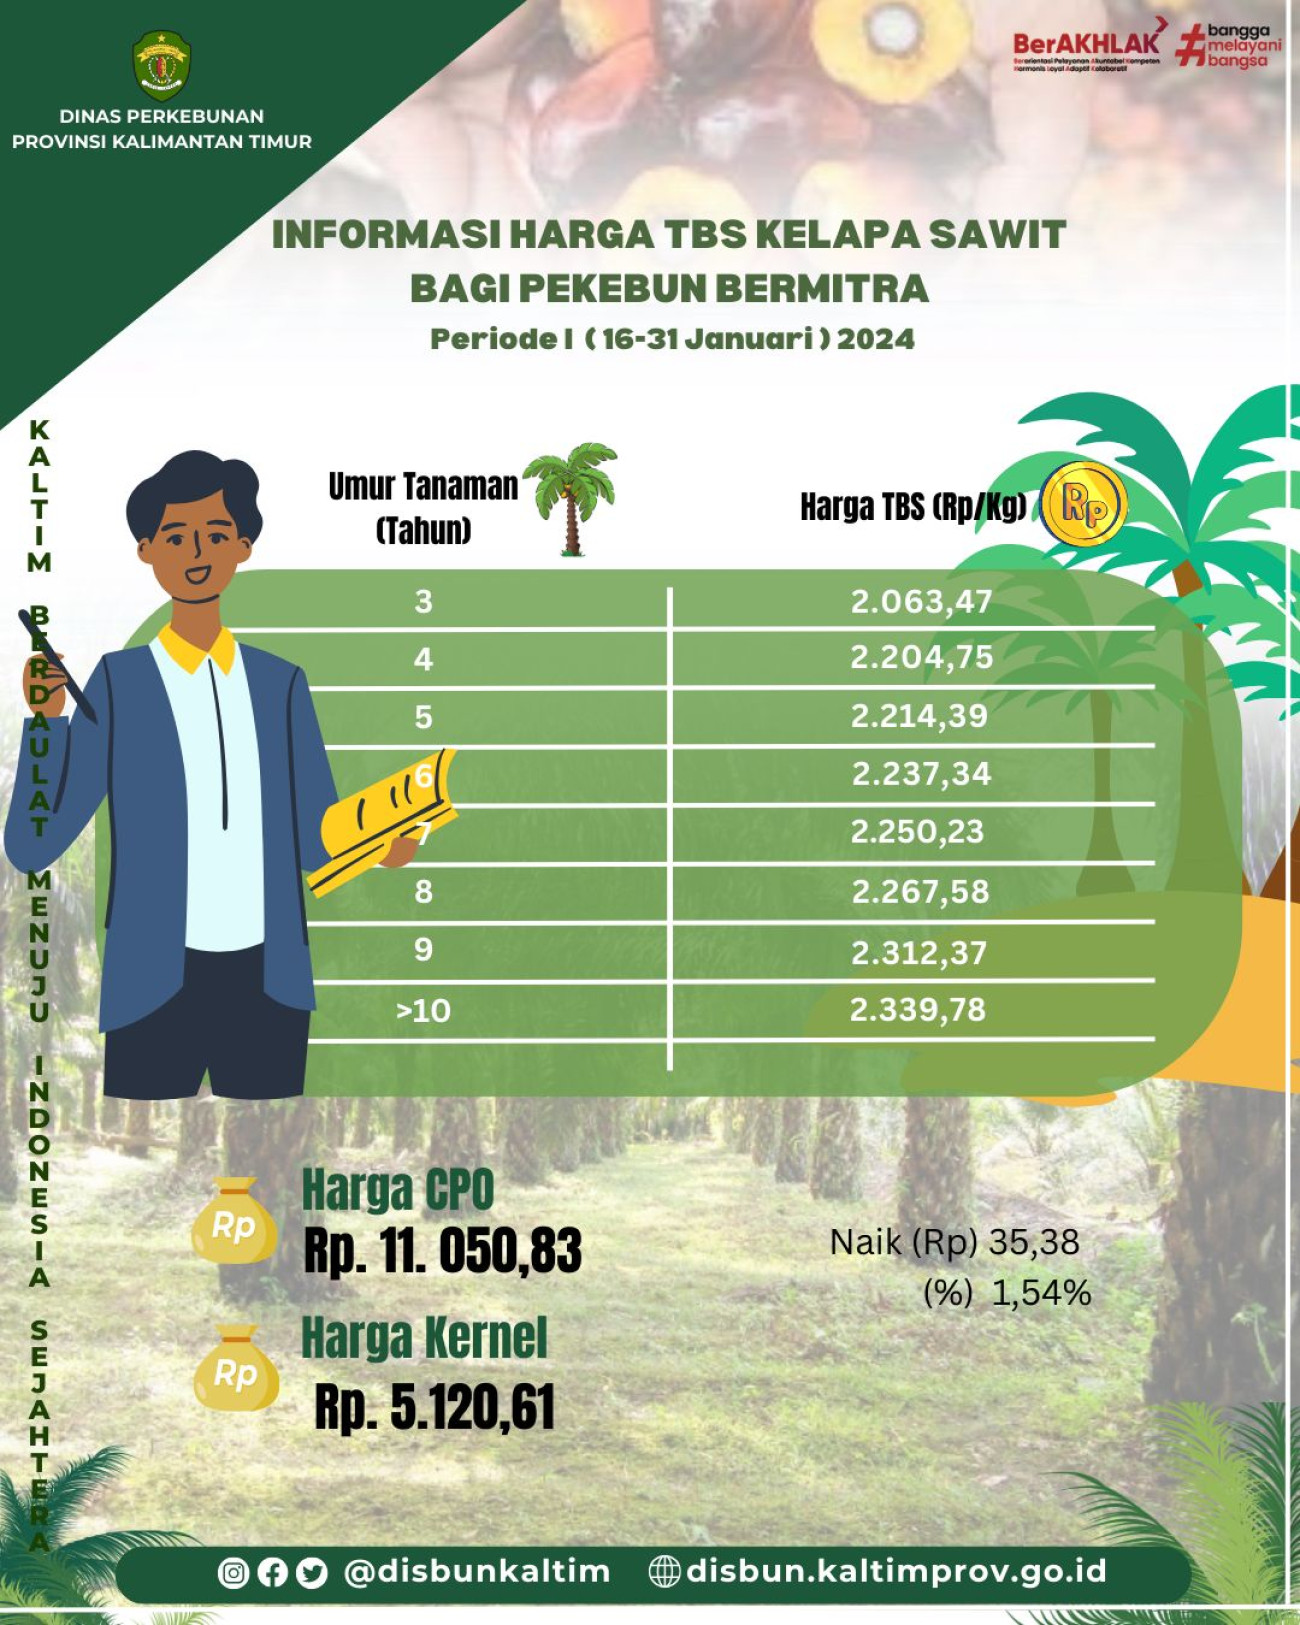 Informasi Harga TBS Kelapa Sawit bagi Pekebun Mitra Periode II Bulan Januari 2024